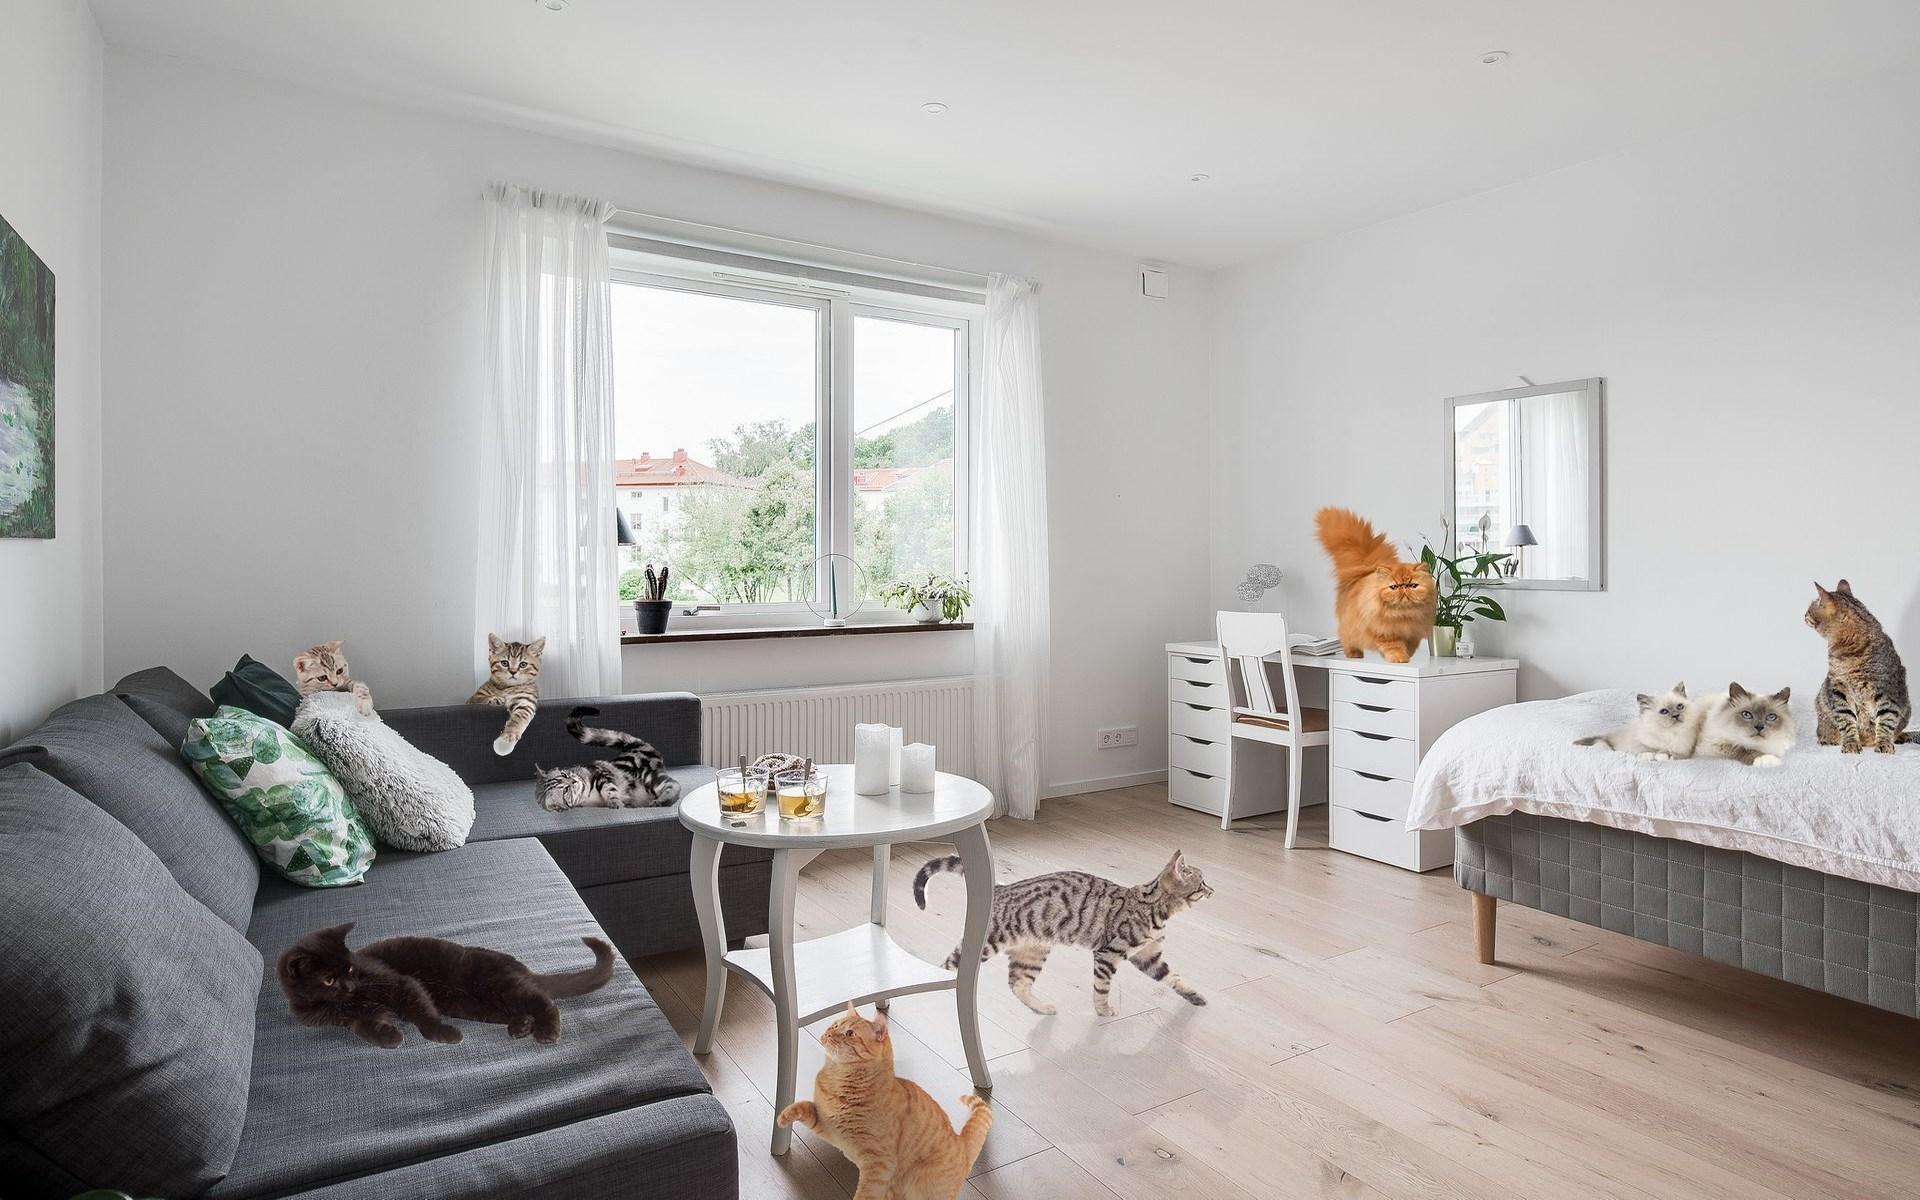 Totalt går det att räkna till 30 photoshoppande katter i den 35 kvadratmeter stora lägenheten. 